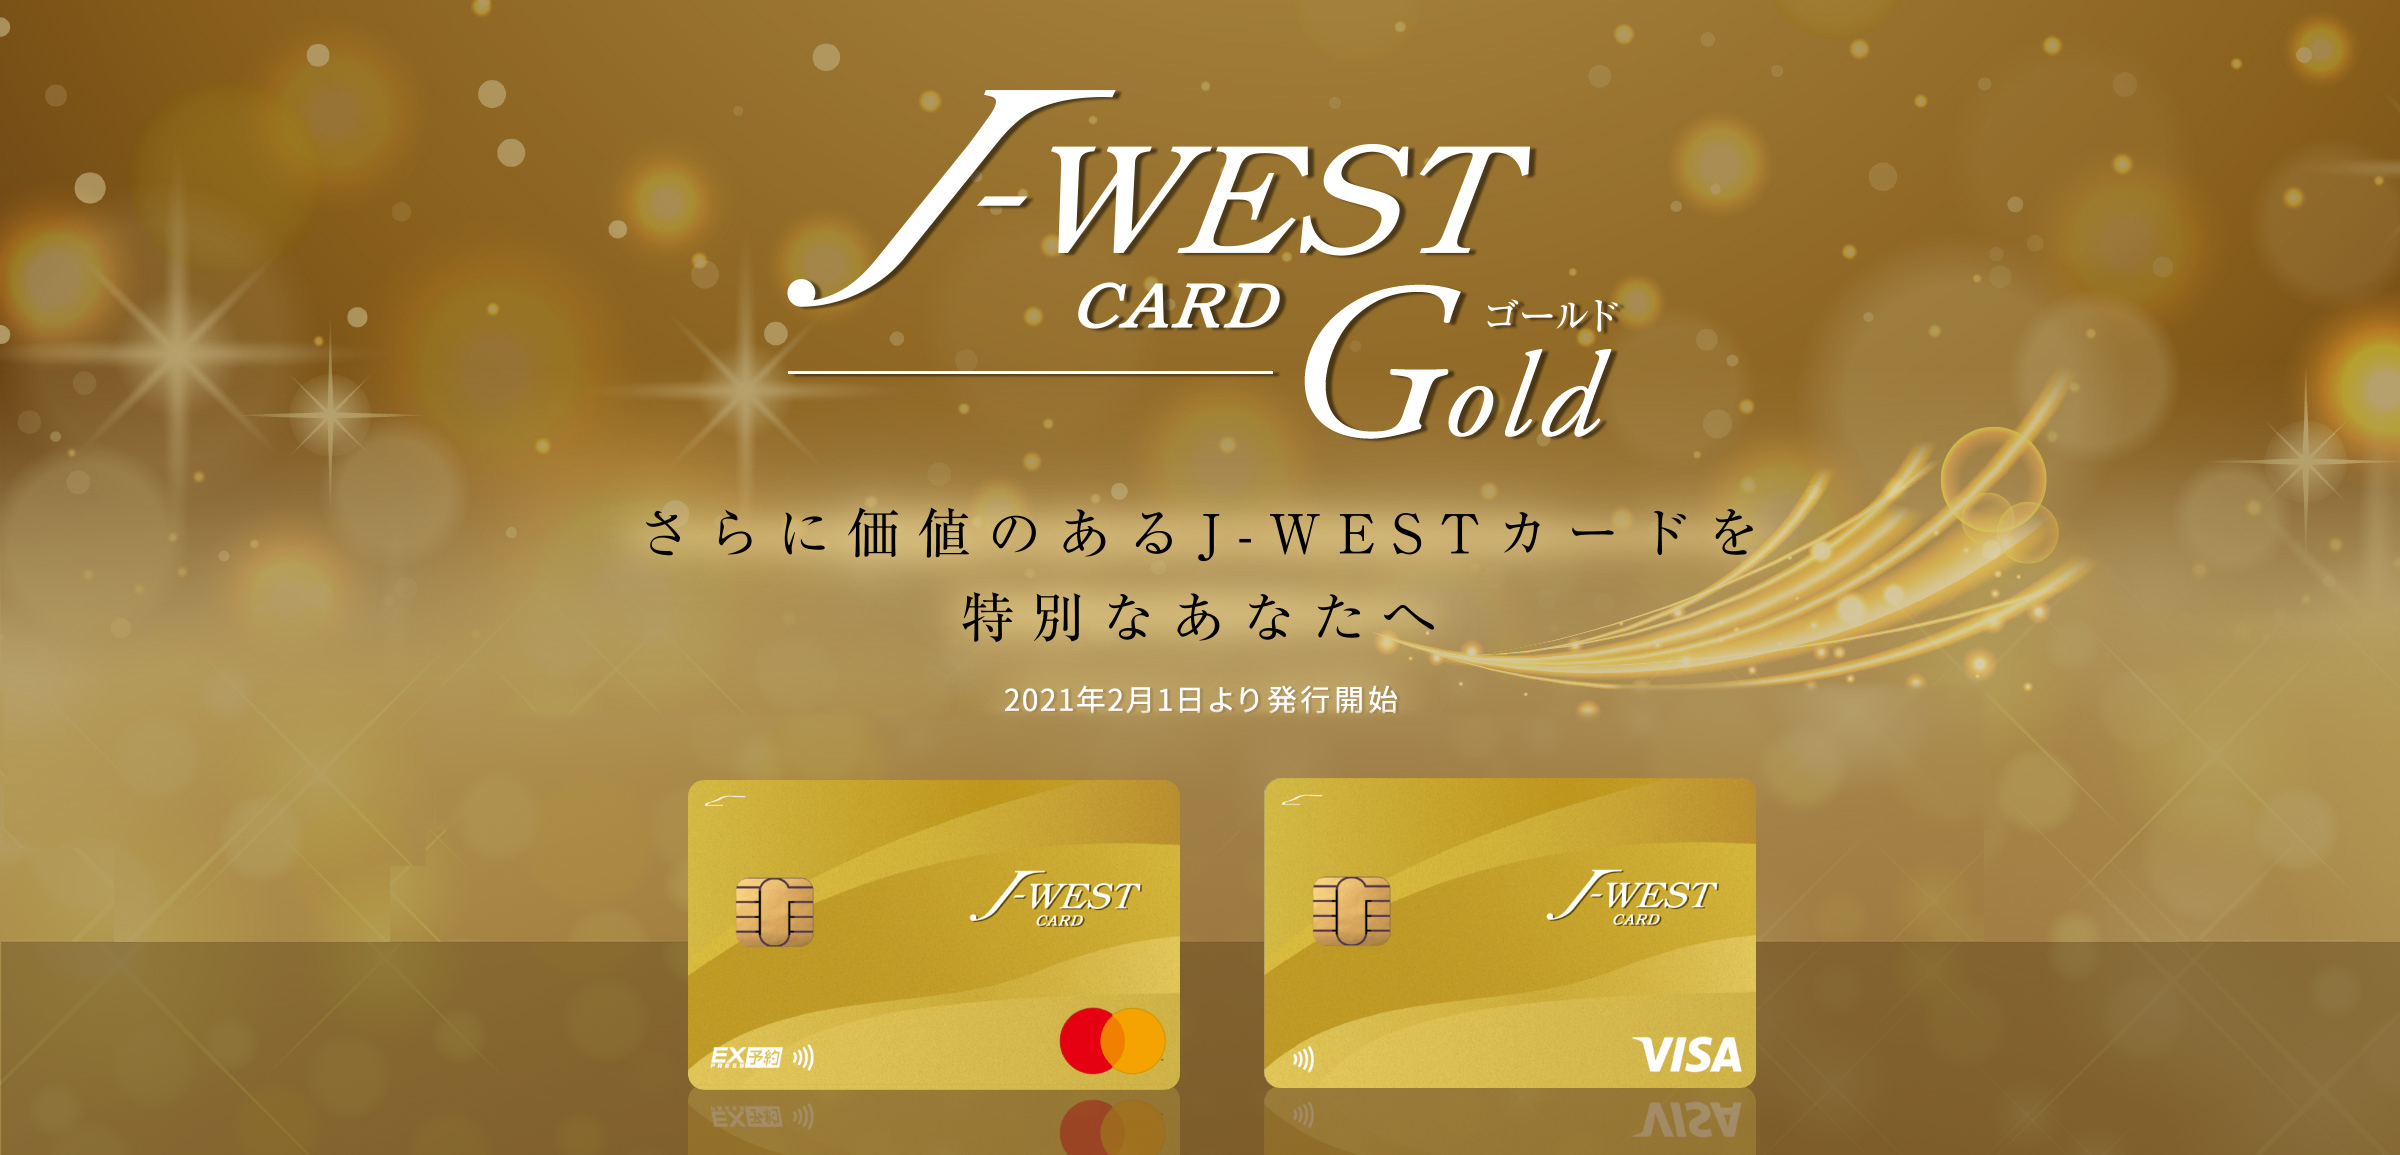 さらに価値のあるJ-WESTカード「J-WESTゴールドカード」を特別なあなたへ。2021年2月1日より発行開始。